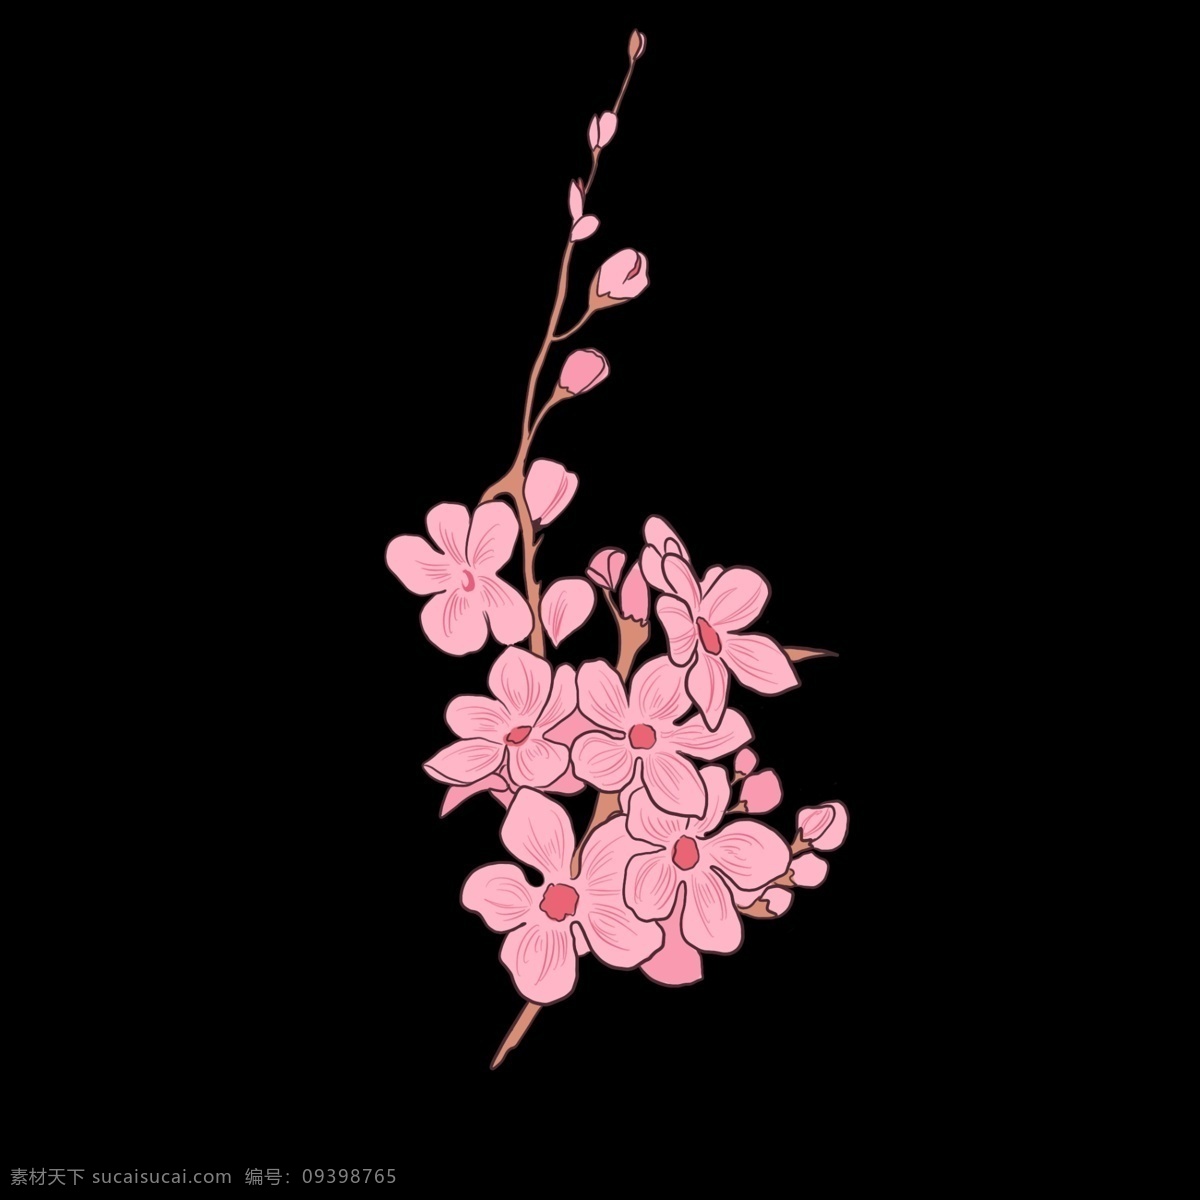 漂亮 樱花 卡通 插画 绽放的樱花 卡通插画 植物插画 樱花插画 樱花花朵 装饰樱花 漂亮的樱花